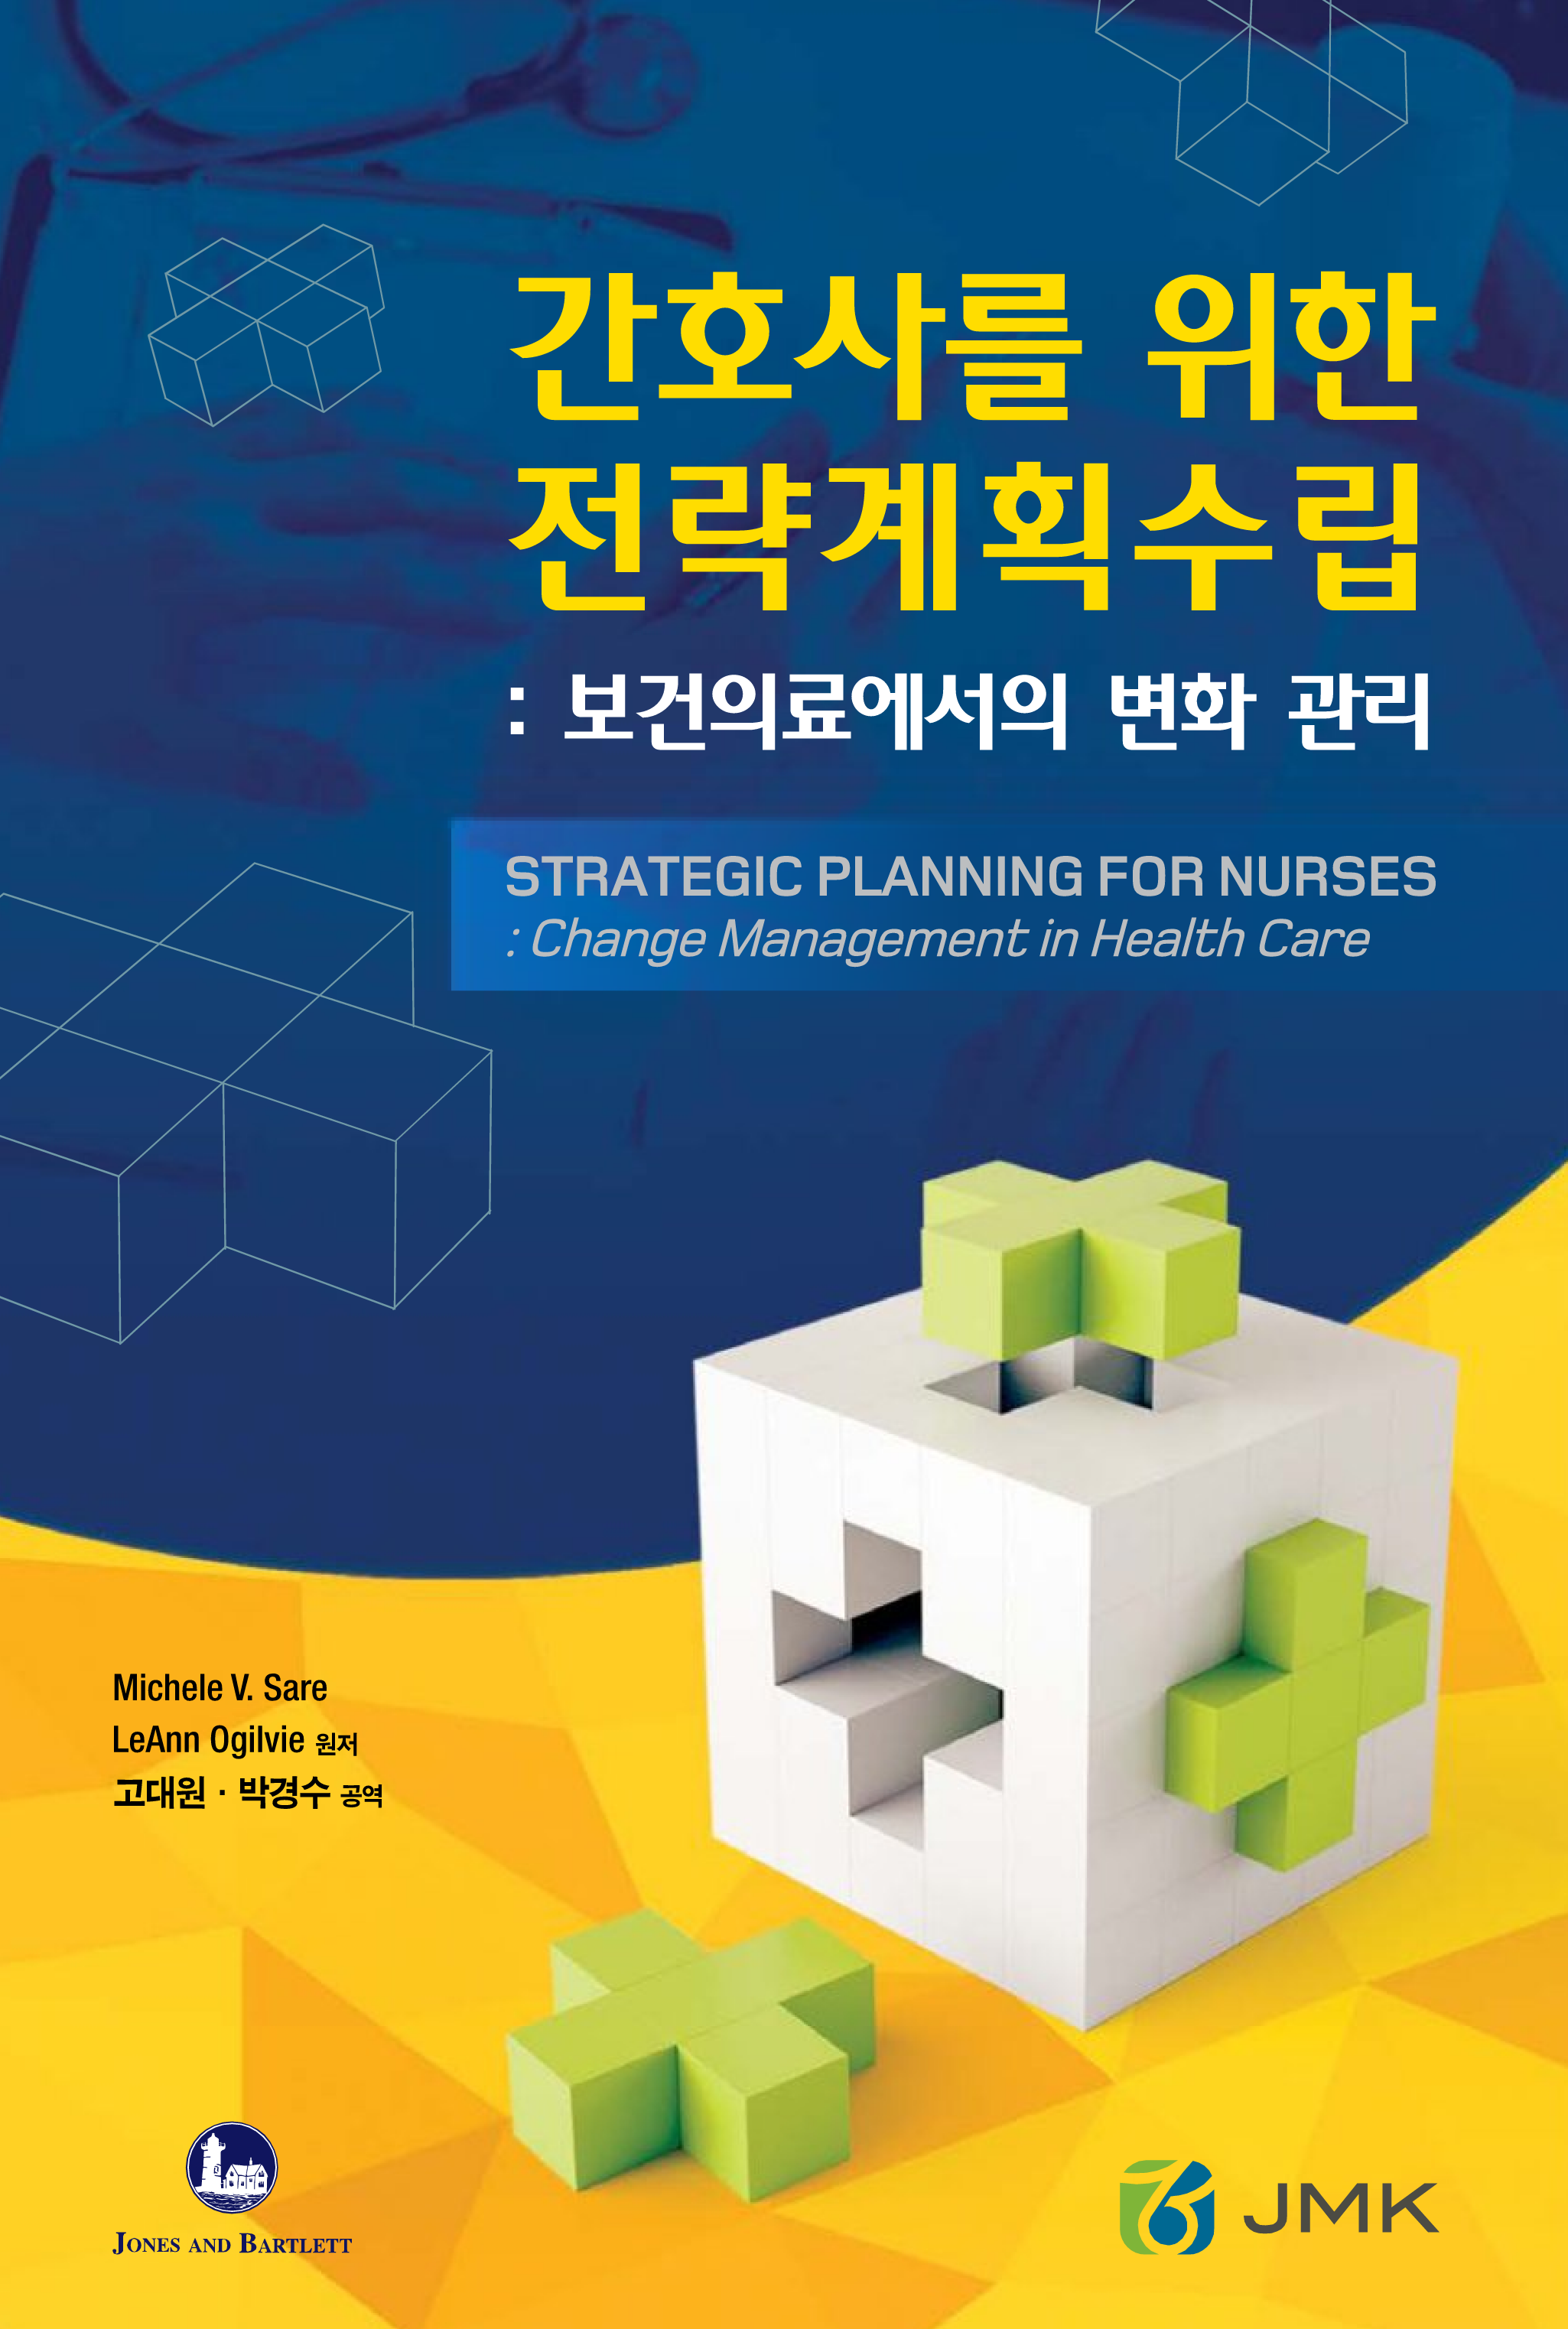 간호사를 위한 전략계획수립